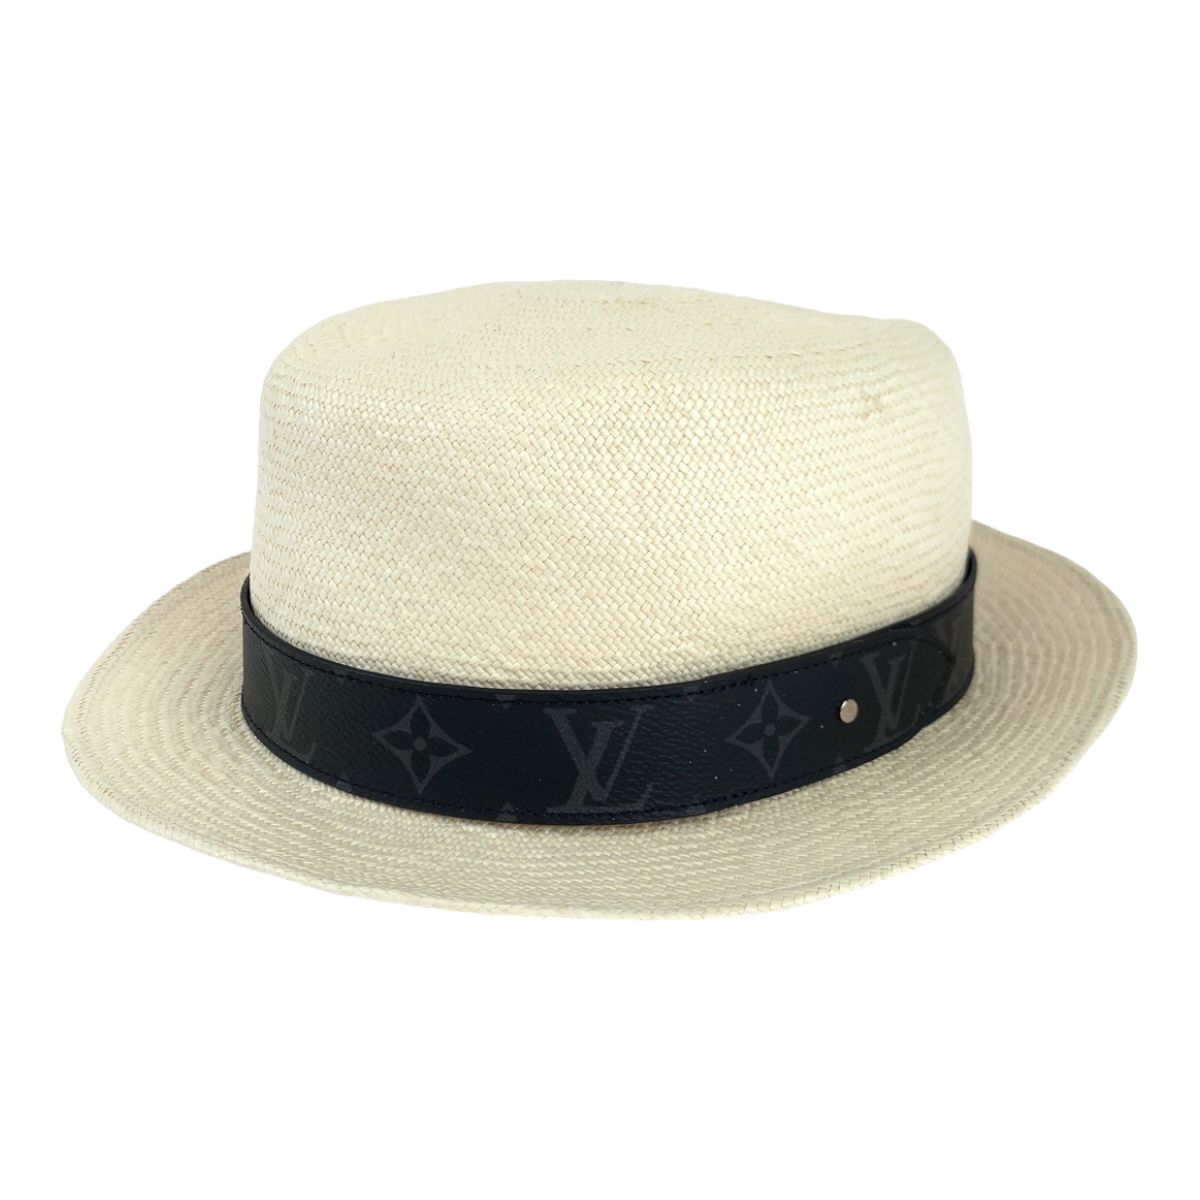 美品 LOUIS VUITTON ルイヴィトン モノグラム エクリプス シャポーサマータイム サイズ58 ホワイト 白 ベージュ M76513 ストローハット 帽子 メンズ 403843